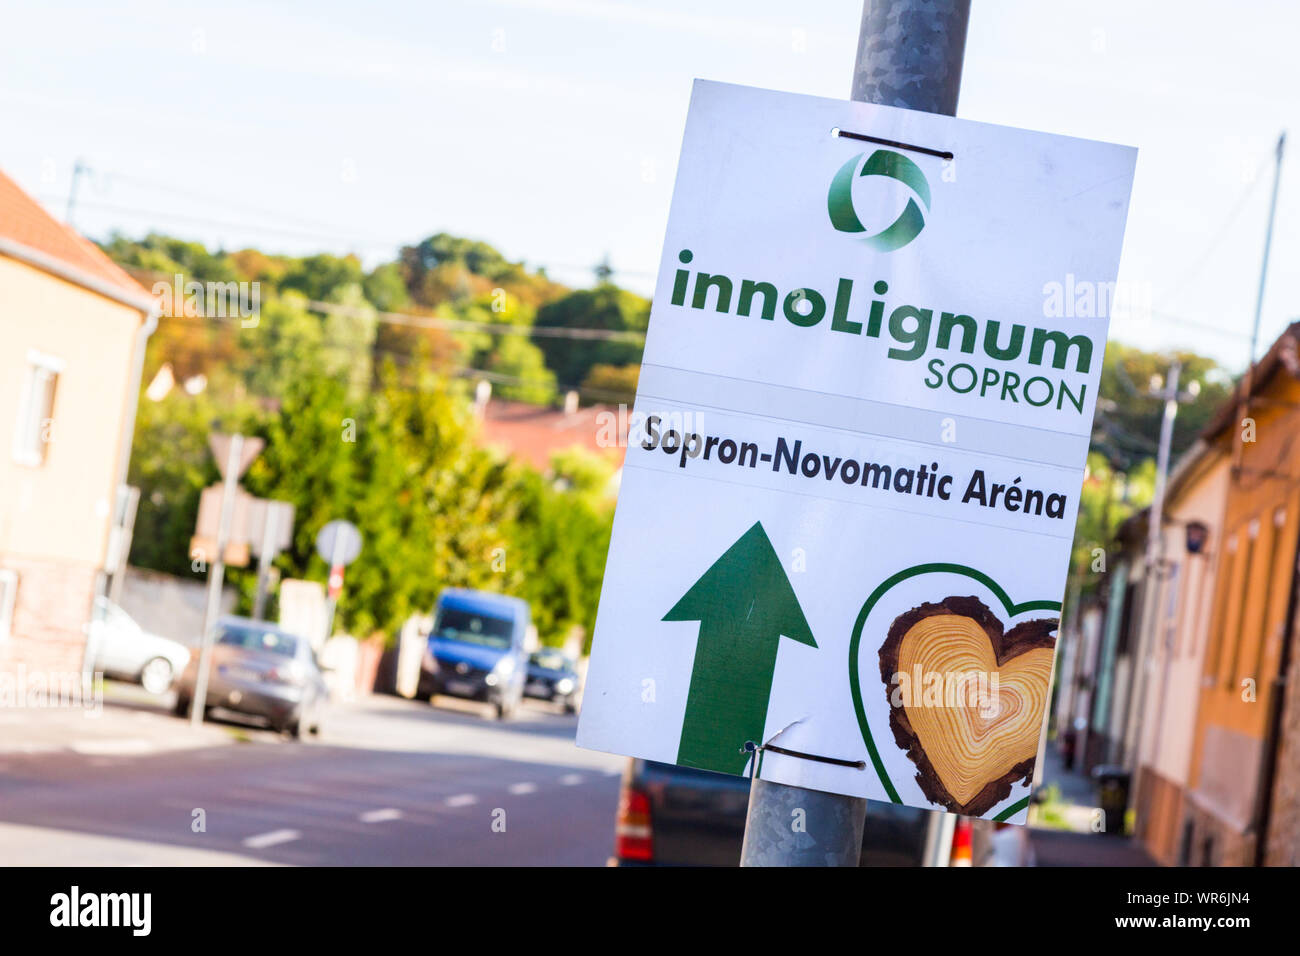 Direction temporaire signe sur l'éclairage public en poste pour Sopron innoLignum Industrie du bois et de la forêt de Sopron, Hongrie Banque D'Images